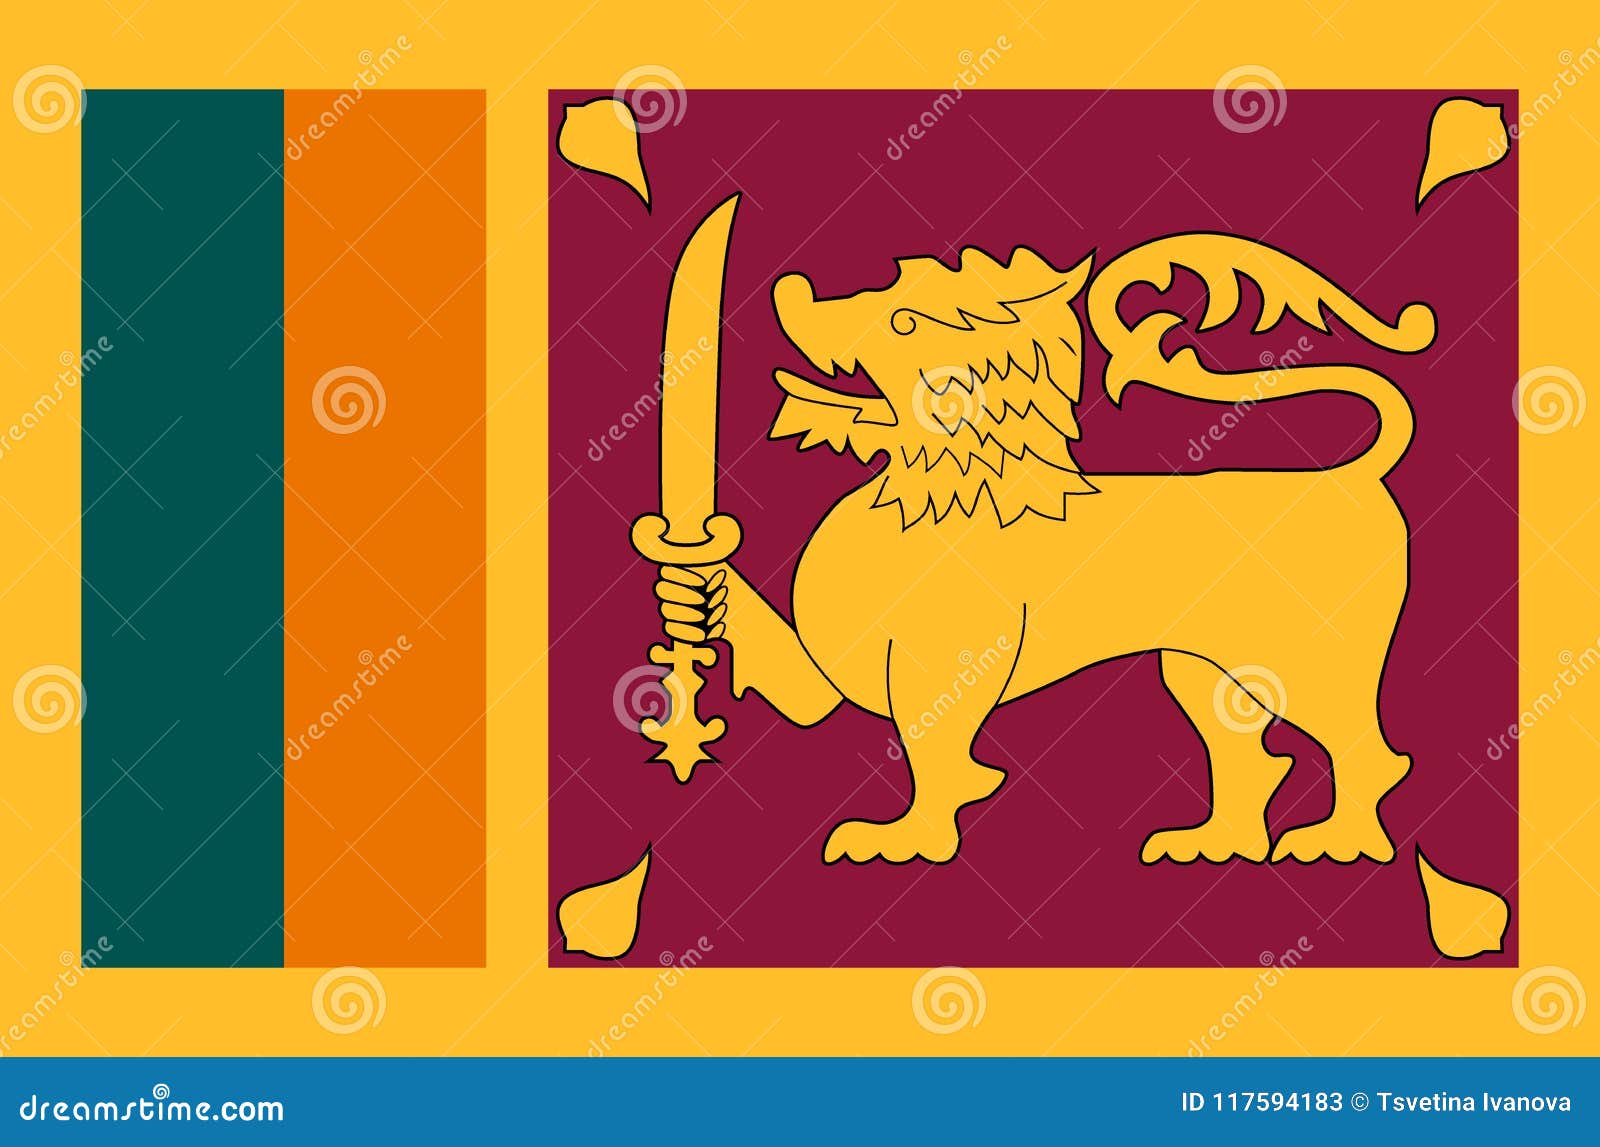 Srilanka Flag Clipart - Get Images One